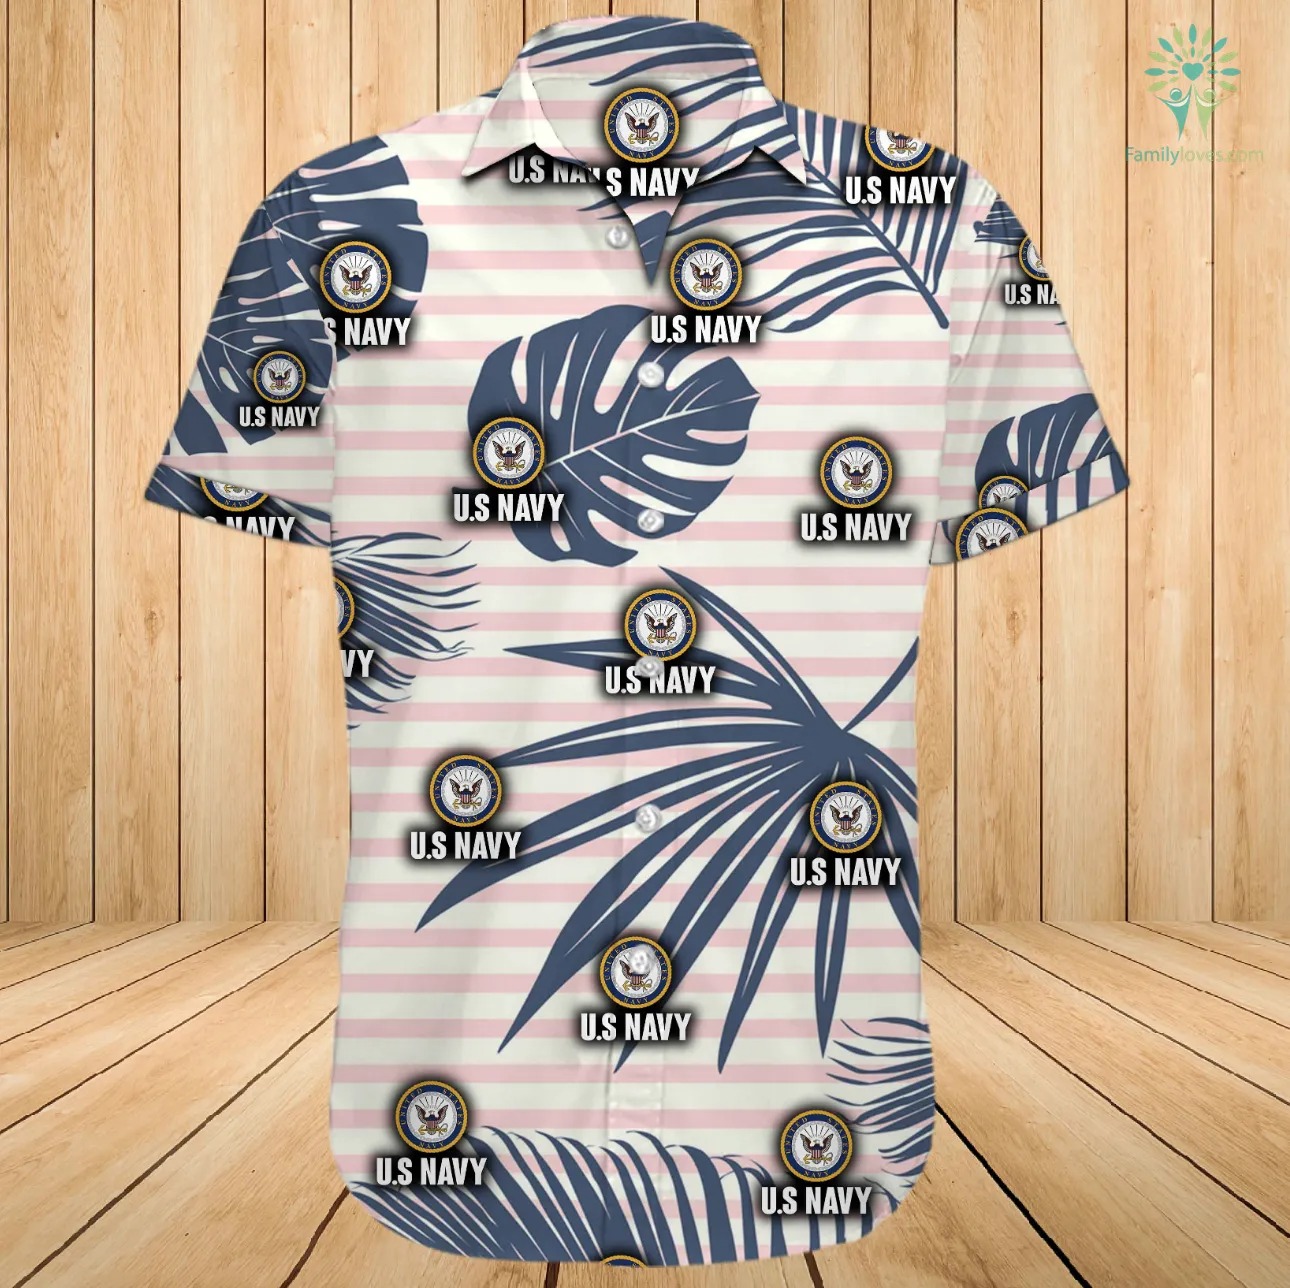 US navy hawaiian shirt and shorts - pic 2